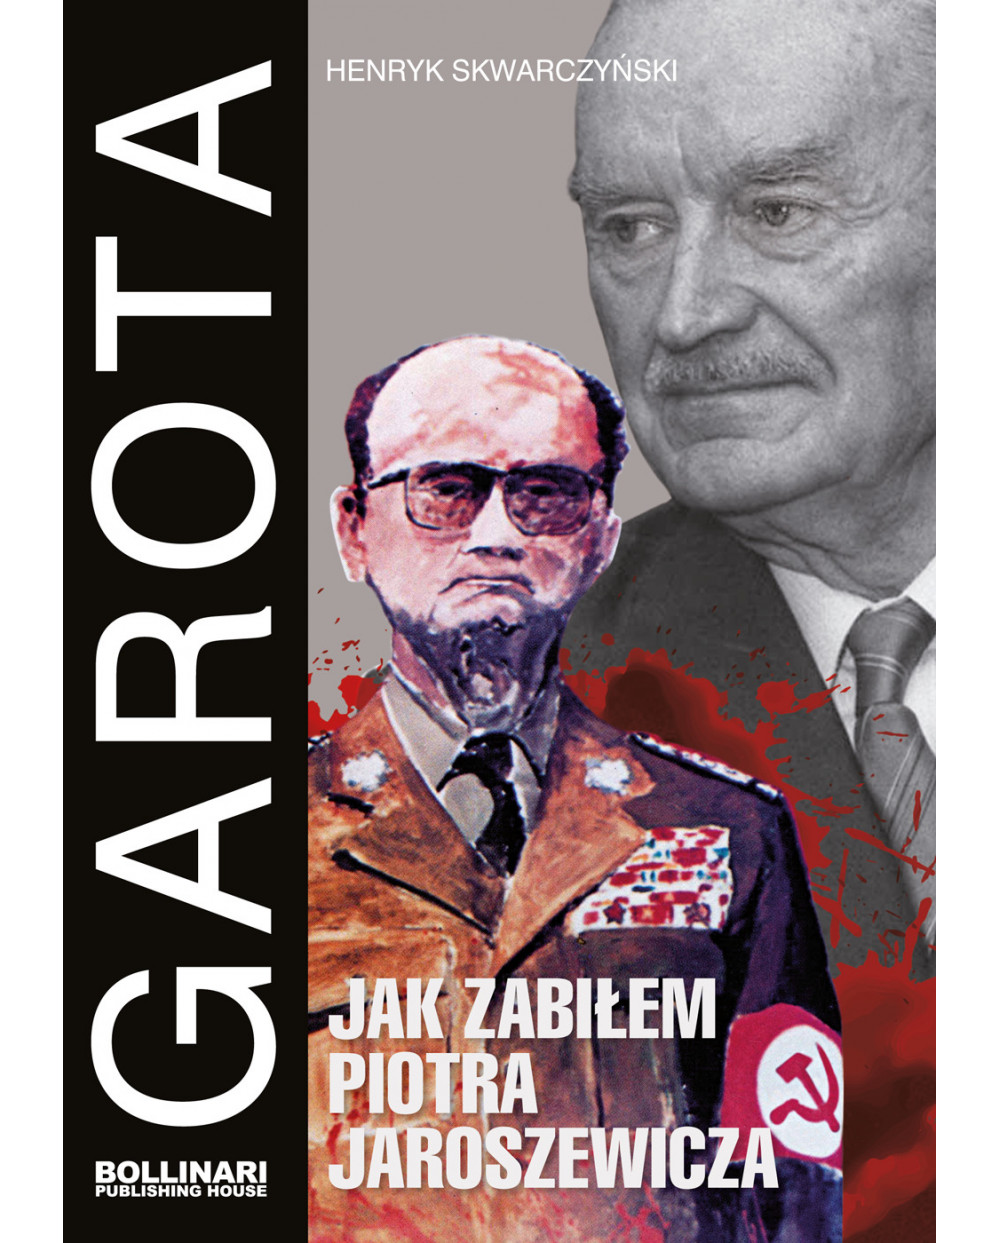 Henryk Skwarczyński - Garota. Jak zabiłem Piotra Jaroszewicza